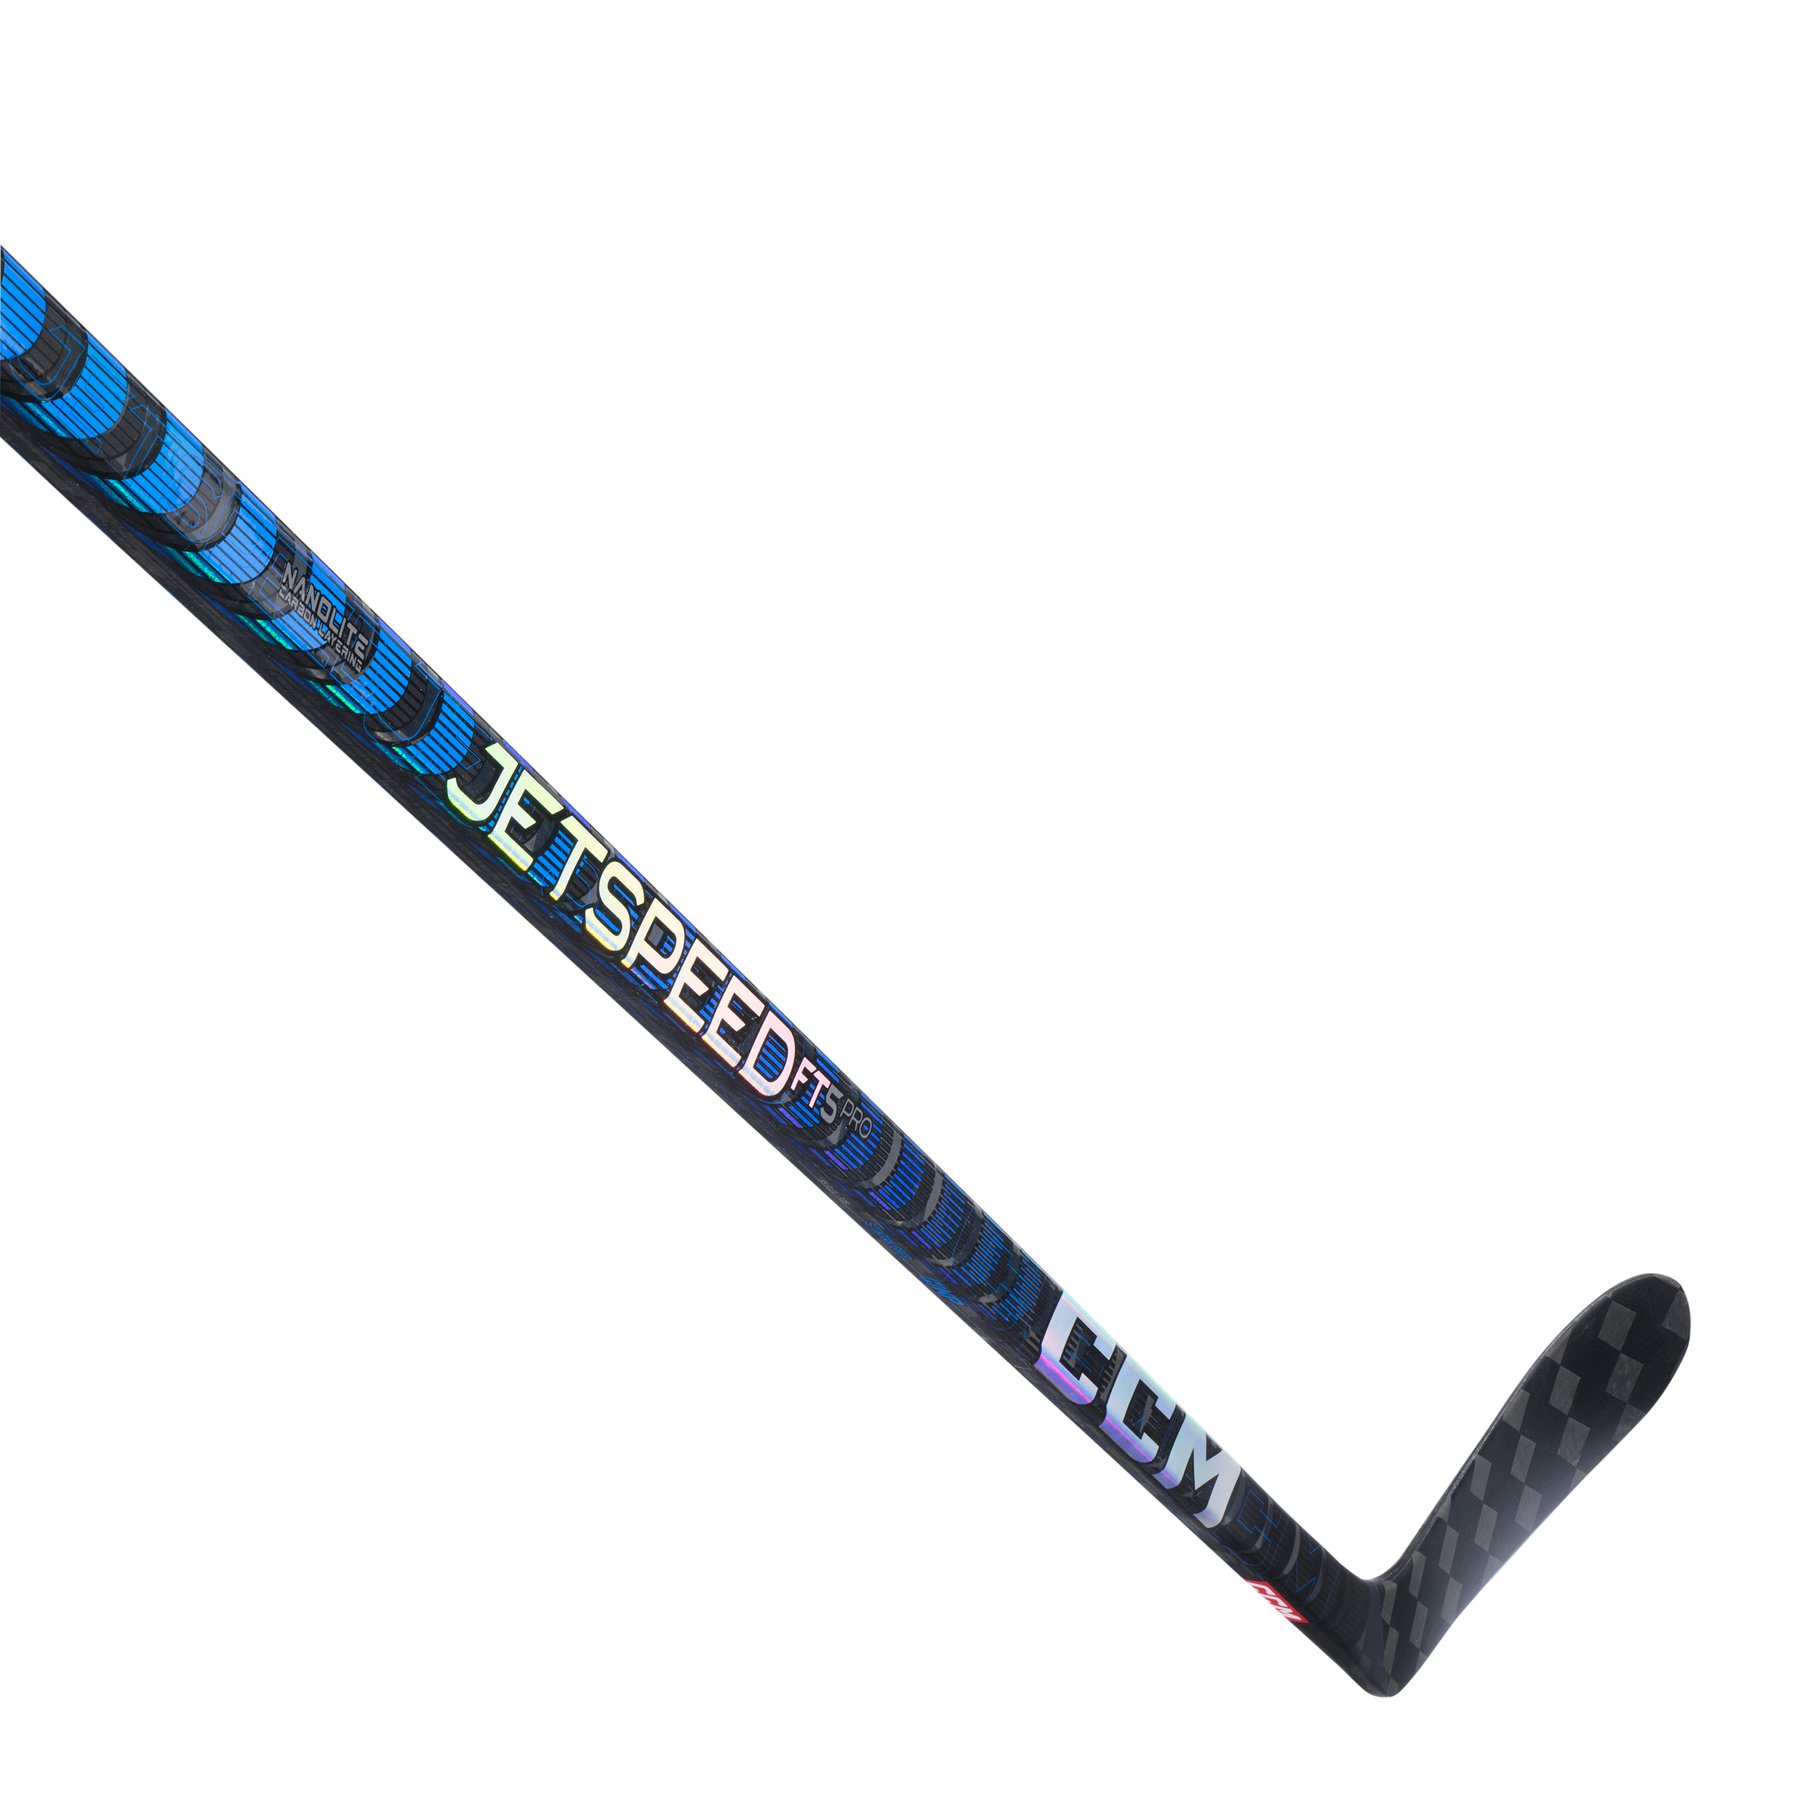 CCM JetSpeed FT5 Pro bâton de hockey junior (bleu)